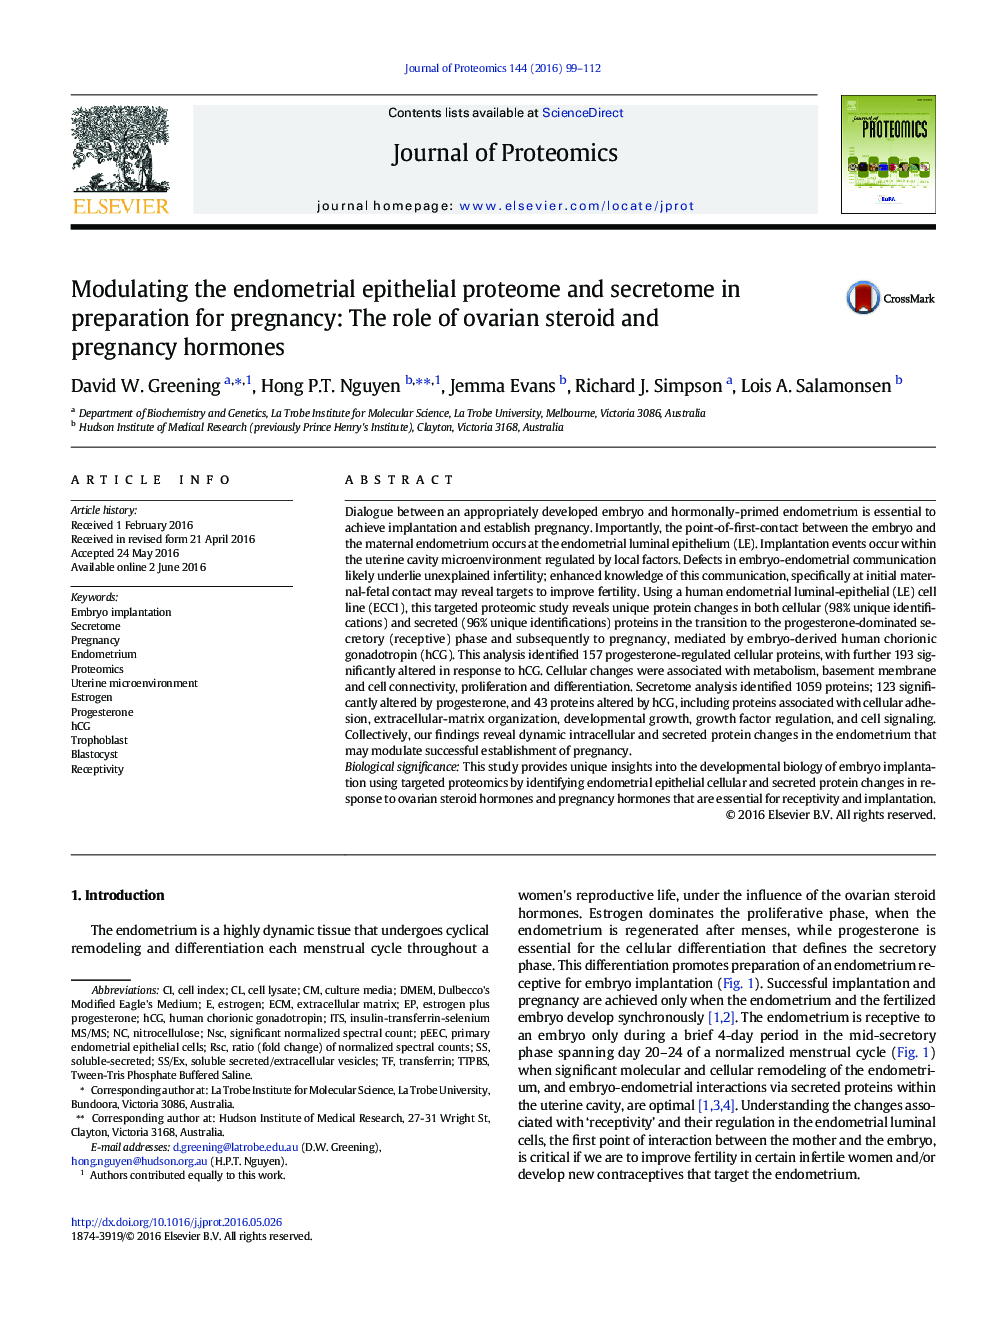 مدولاسیون پروتئوم اپیتلیال اندومتر و مخدر در آماده سازی برای بارداری: نقش هورمون های استروئیدی تخمدان و حاملگی 